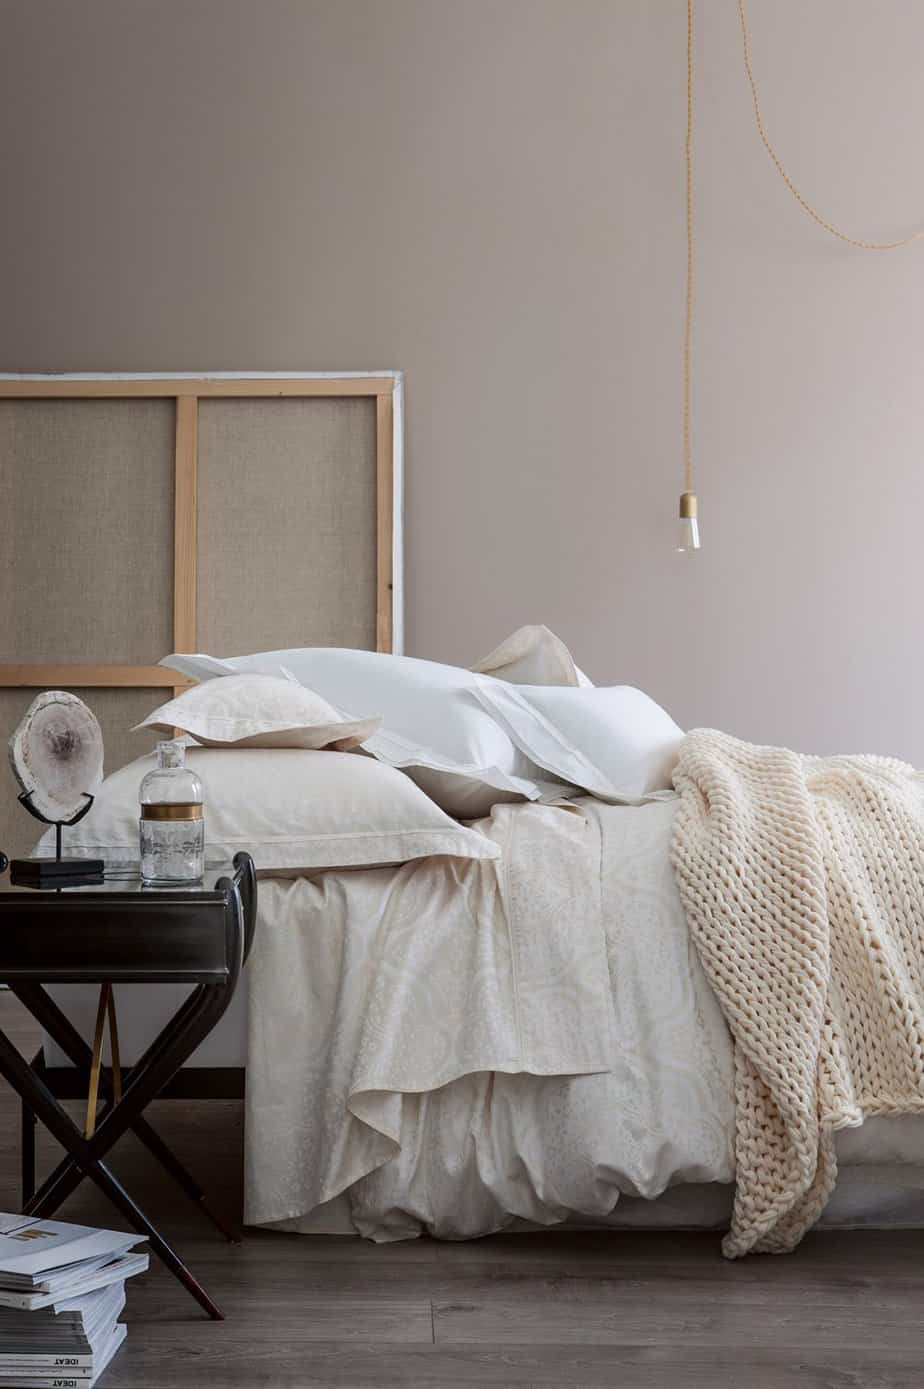 linge de lit allegorie nina ricci - Pinterest : une chambre cocooning pour l'hiver